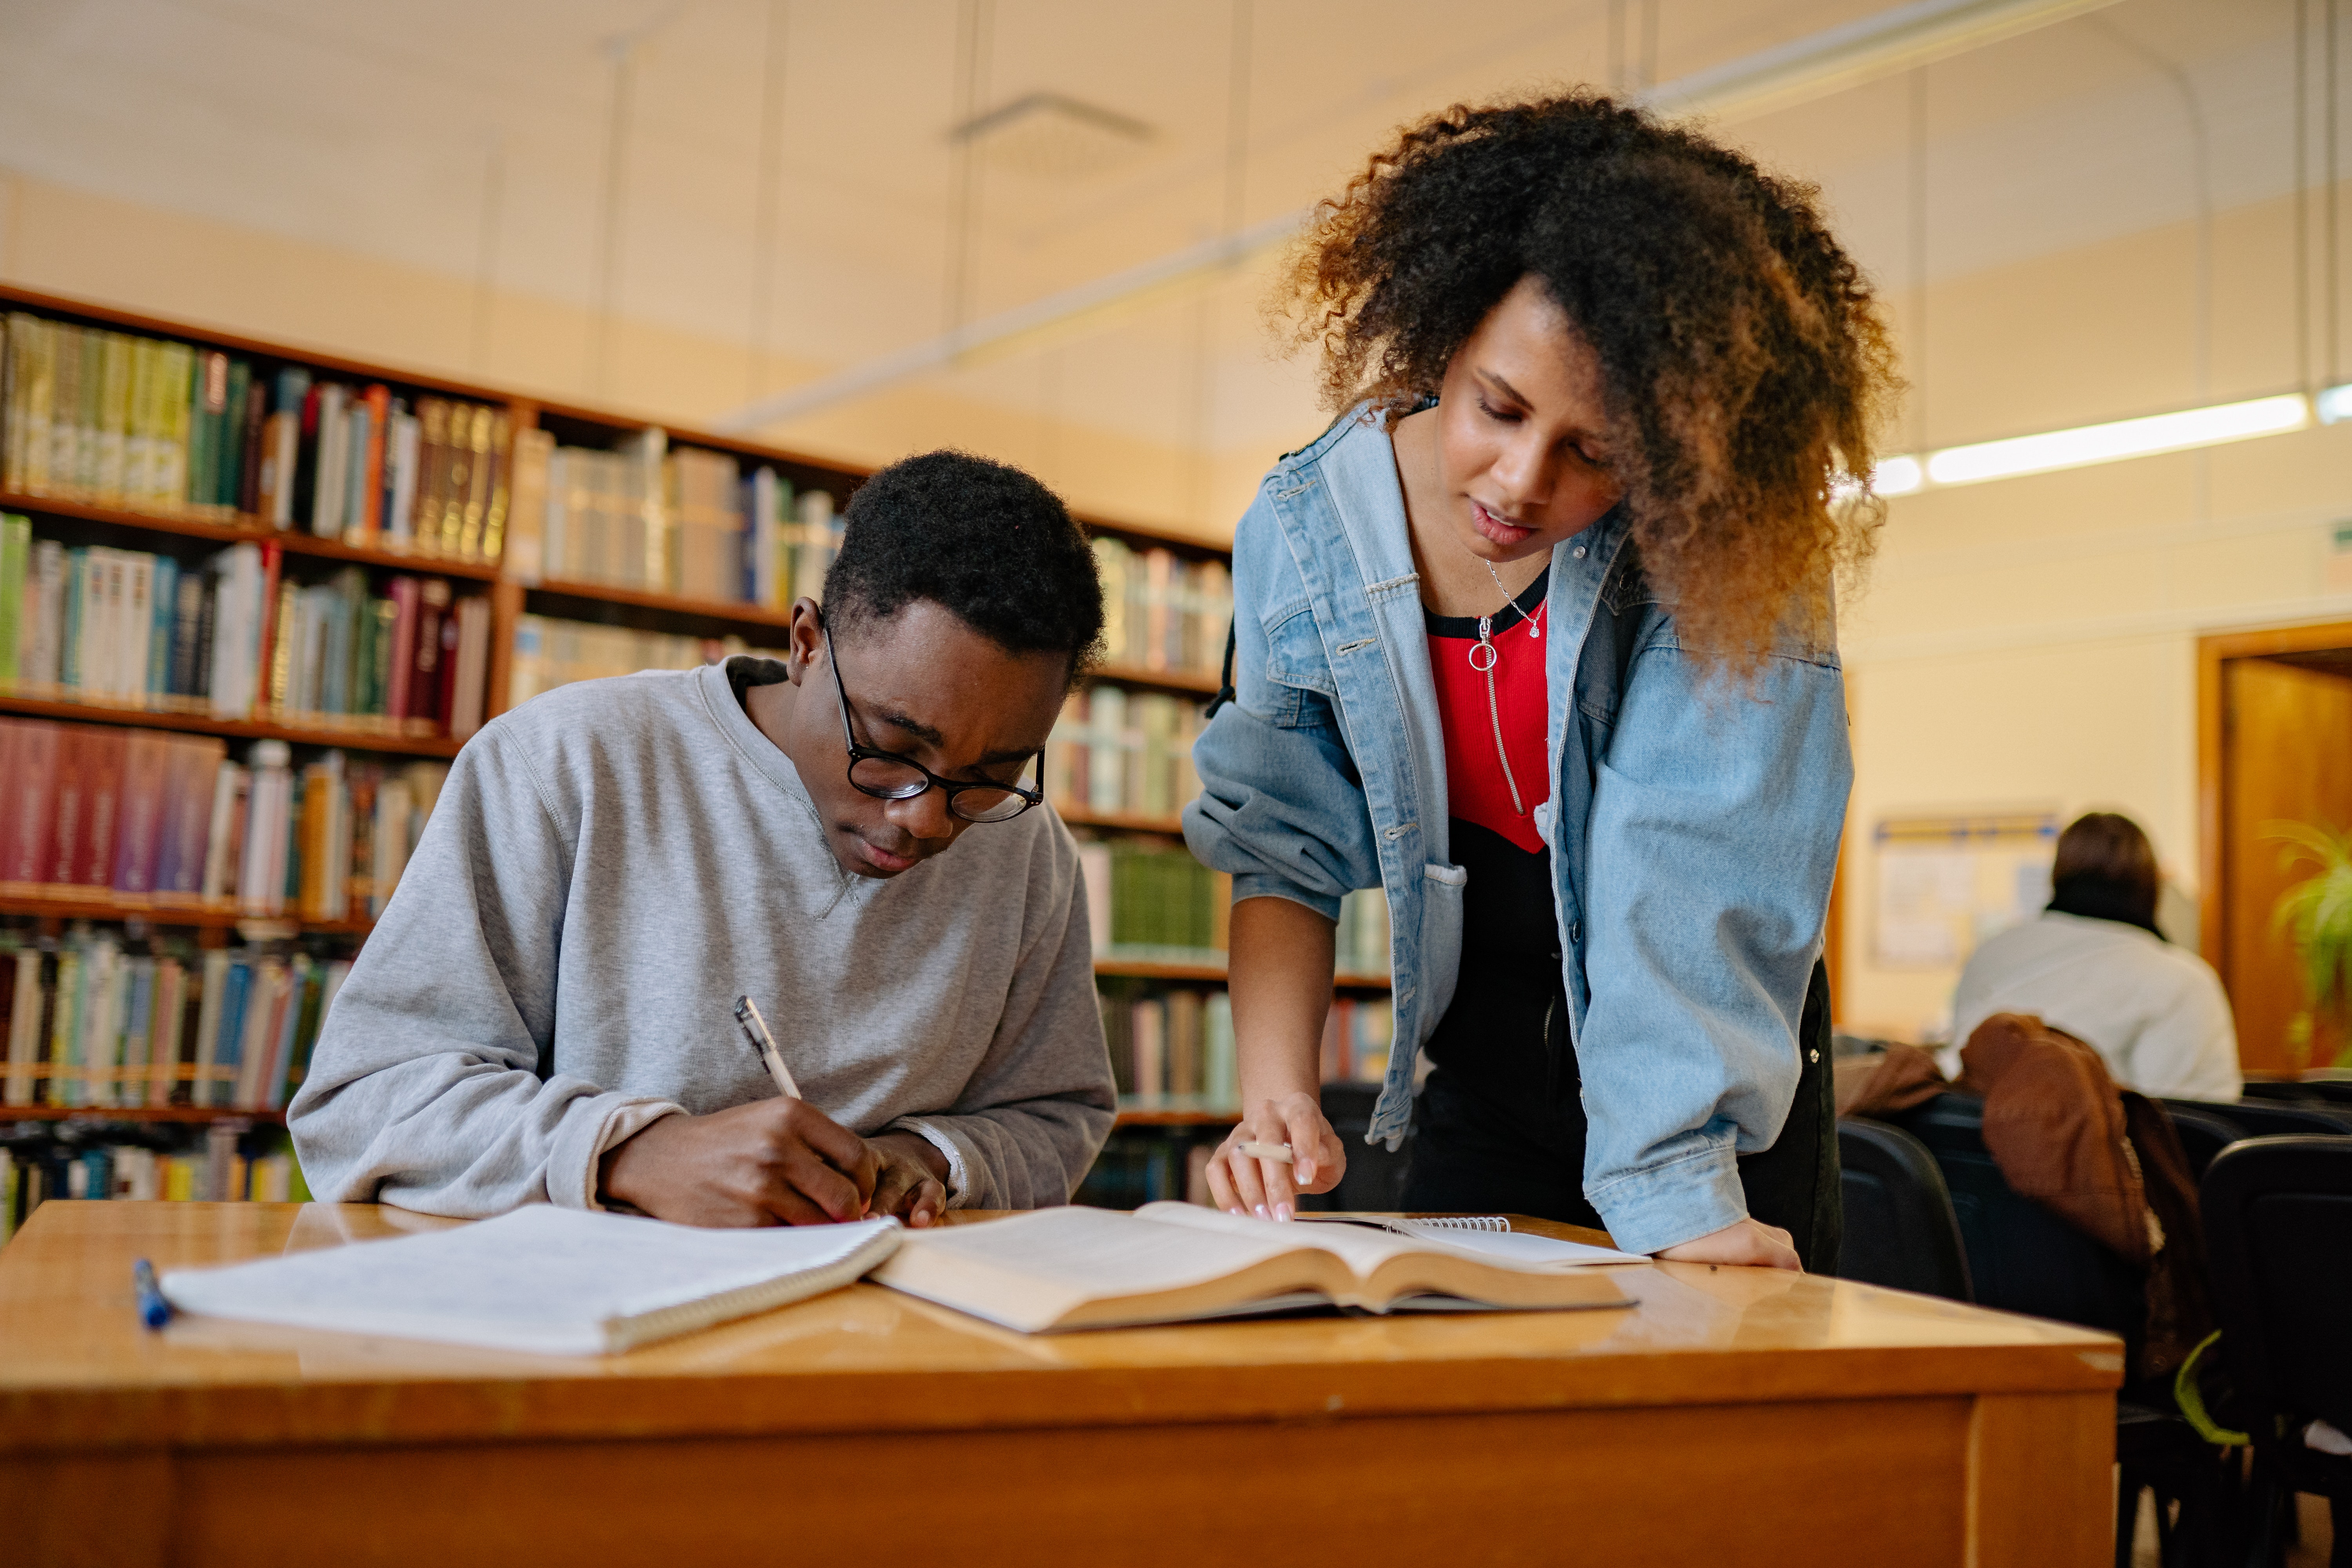 Um homem negro está sentado escrevendo e uma mulher negra está em pé olhando os materiais ao seu lado. Eles estão em uma biblioteca. 